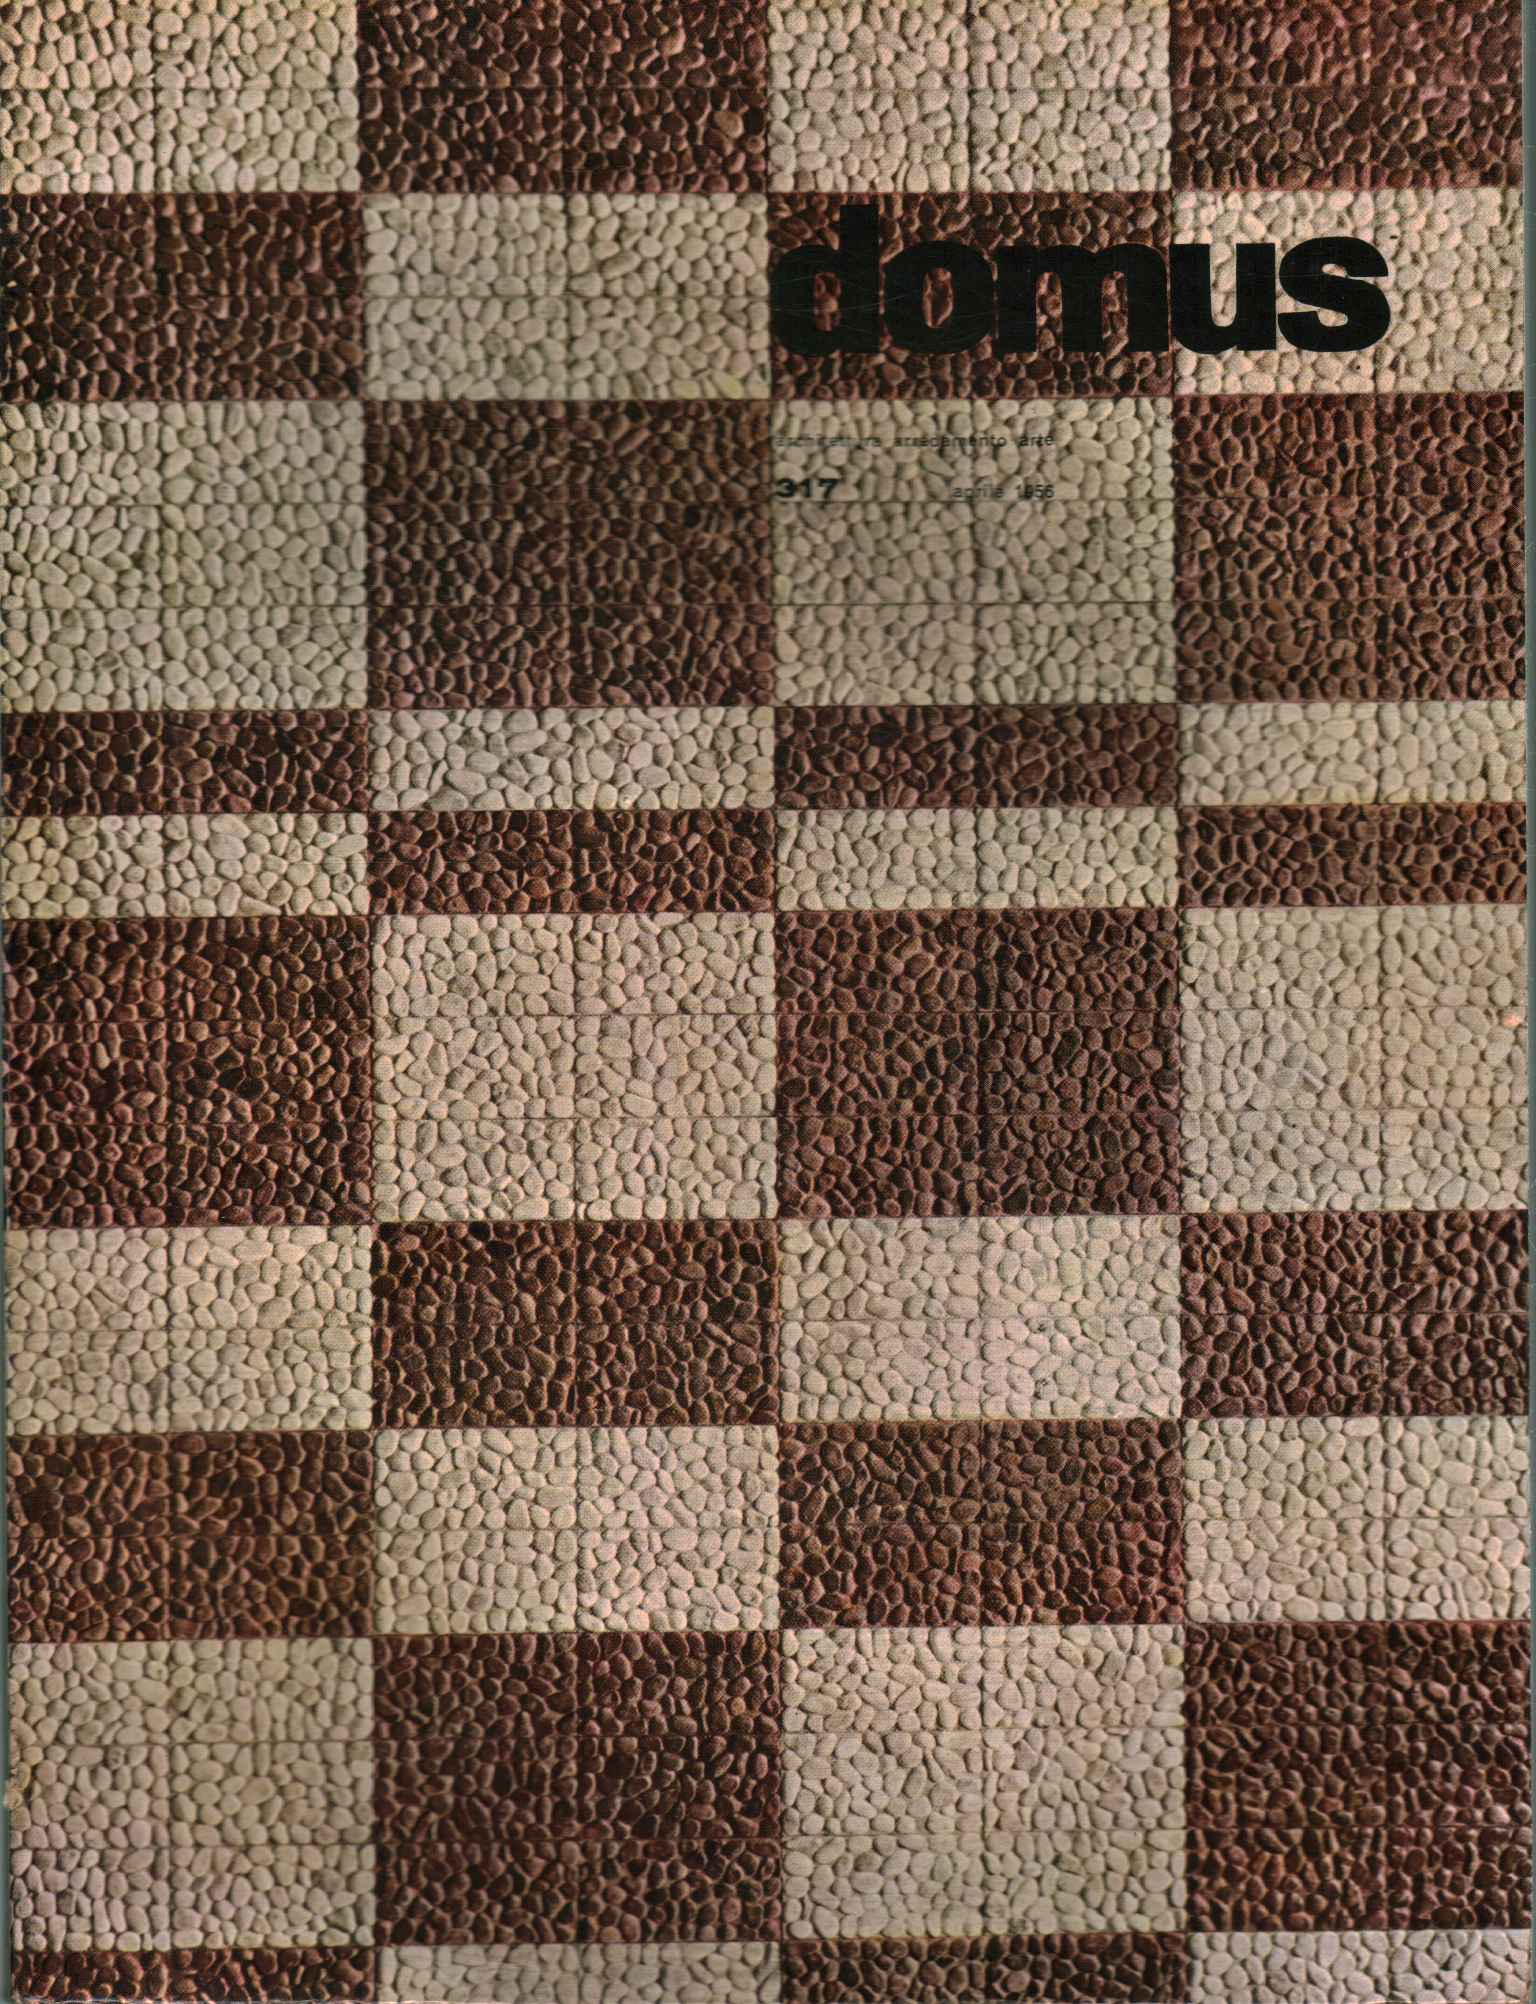 Domus. Arquitectura, muebles, arte (abierto